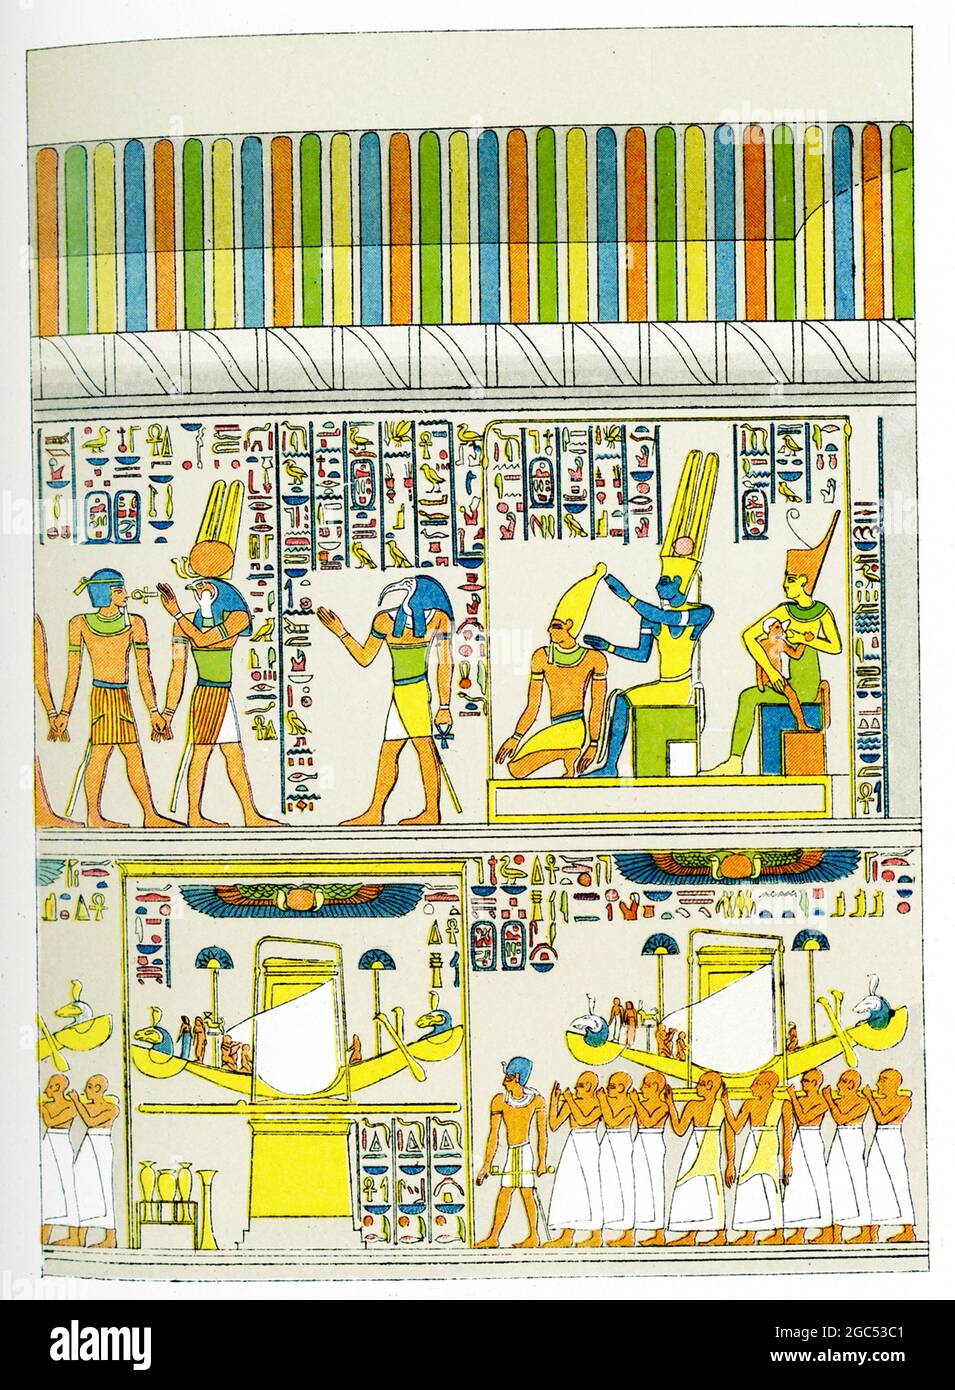 La légende accompagnant cette illustration de 1903 dans le livre de Gaston Maspero sur l’histoire de l’Égypte est la suivante : « des bas reliefs sur le mur de granit de Karnak ». Banque D'Images